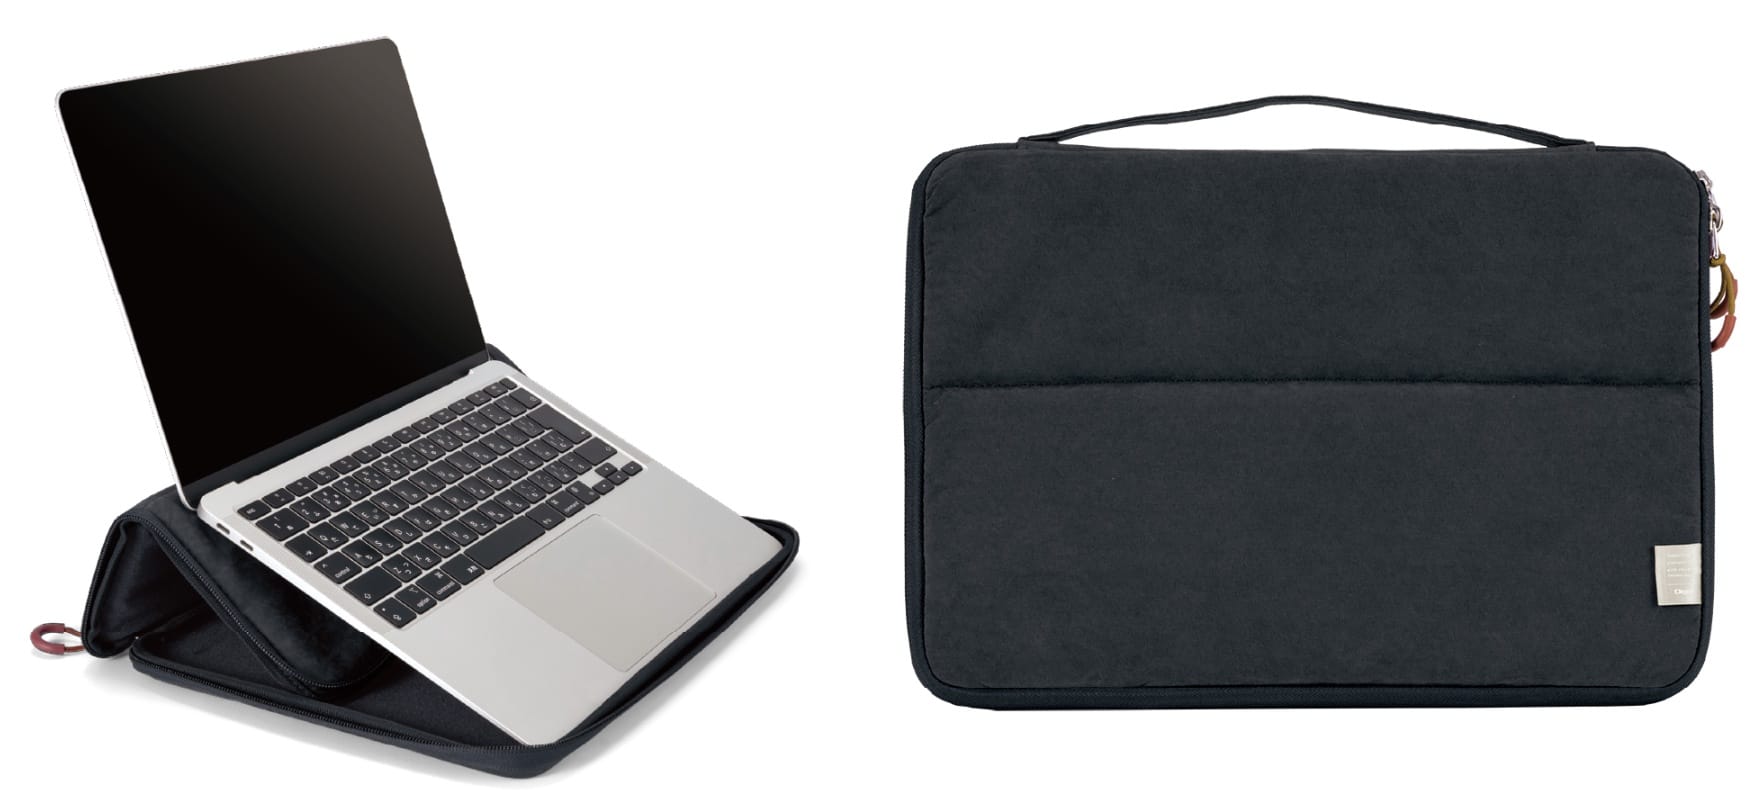 ナカバヤシ、スタンドになるノートPC用インナーケースと自立するノートPC用バッグを発売